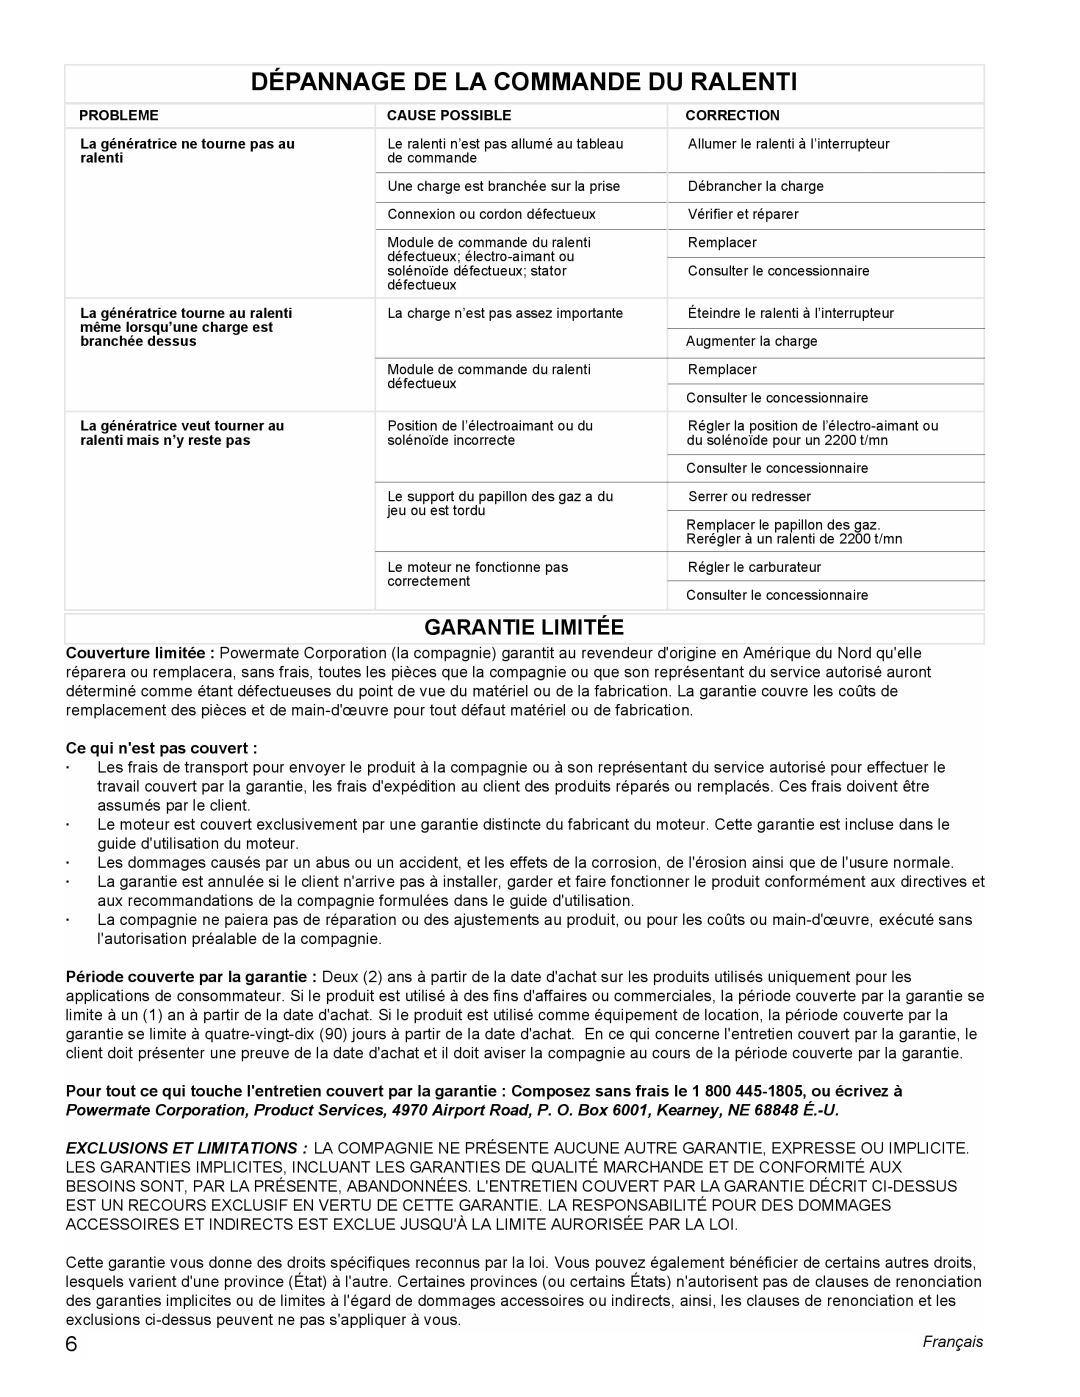 Powermate PM0605000 manual Dépannage De La Commande Du Ralenti, Garantie Limitée, Ce qui nest pas couvert, Français 